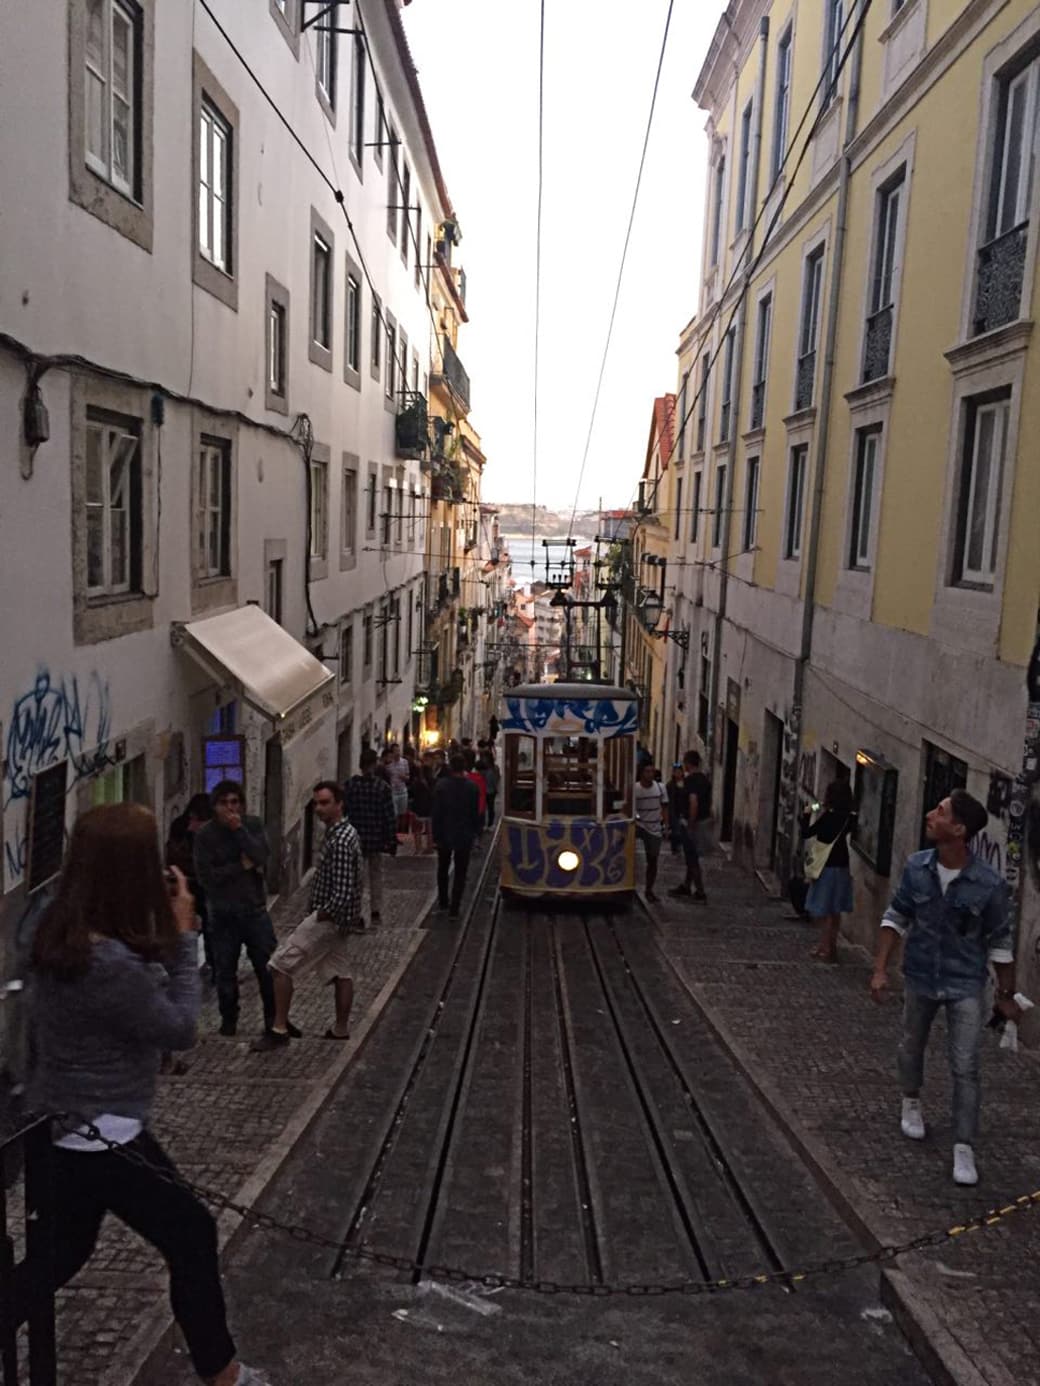 A tram in Lisbon